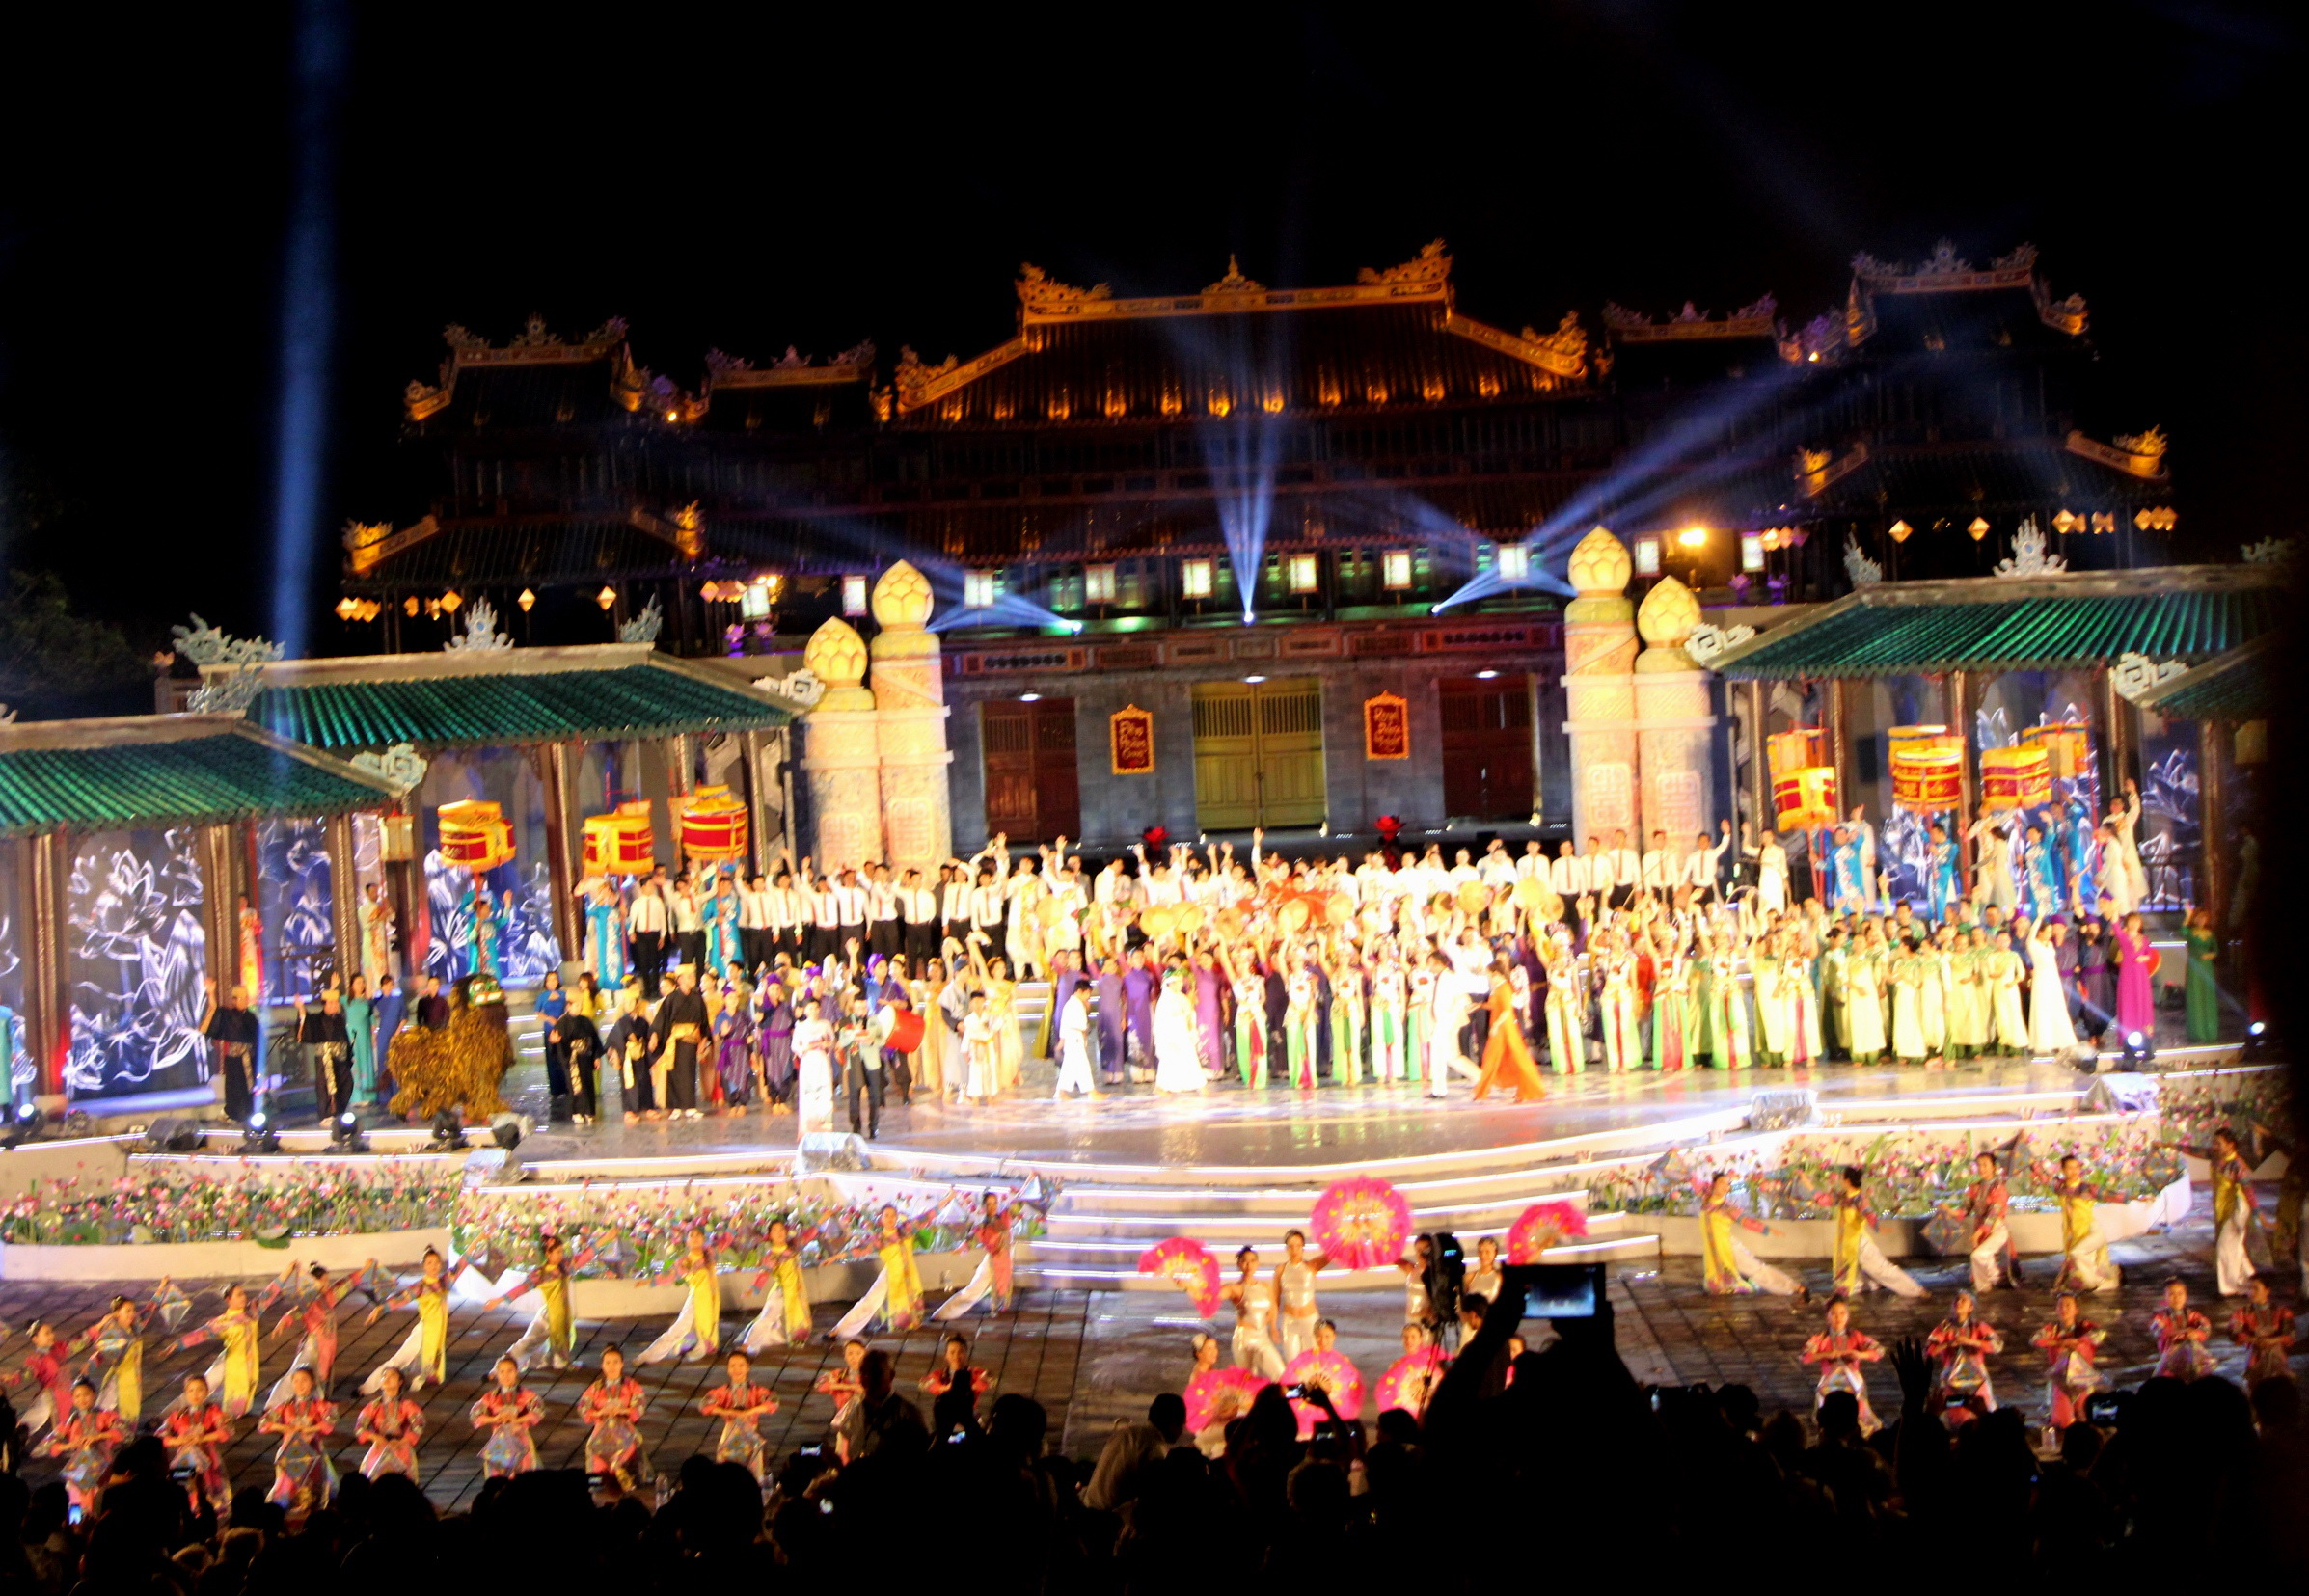 Festival Huế được đánh giá là điểm hội tụ văn hóa Việt và năm châu lục, tuy nhiên dưới mắt chuyên gia thì vẫn còn nhiều điều cần chấn chỉnh - Ảnh: M.TỰ